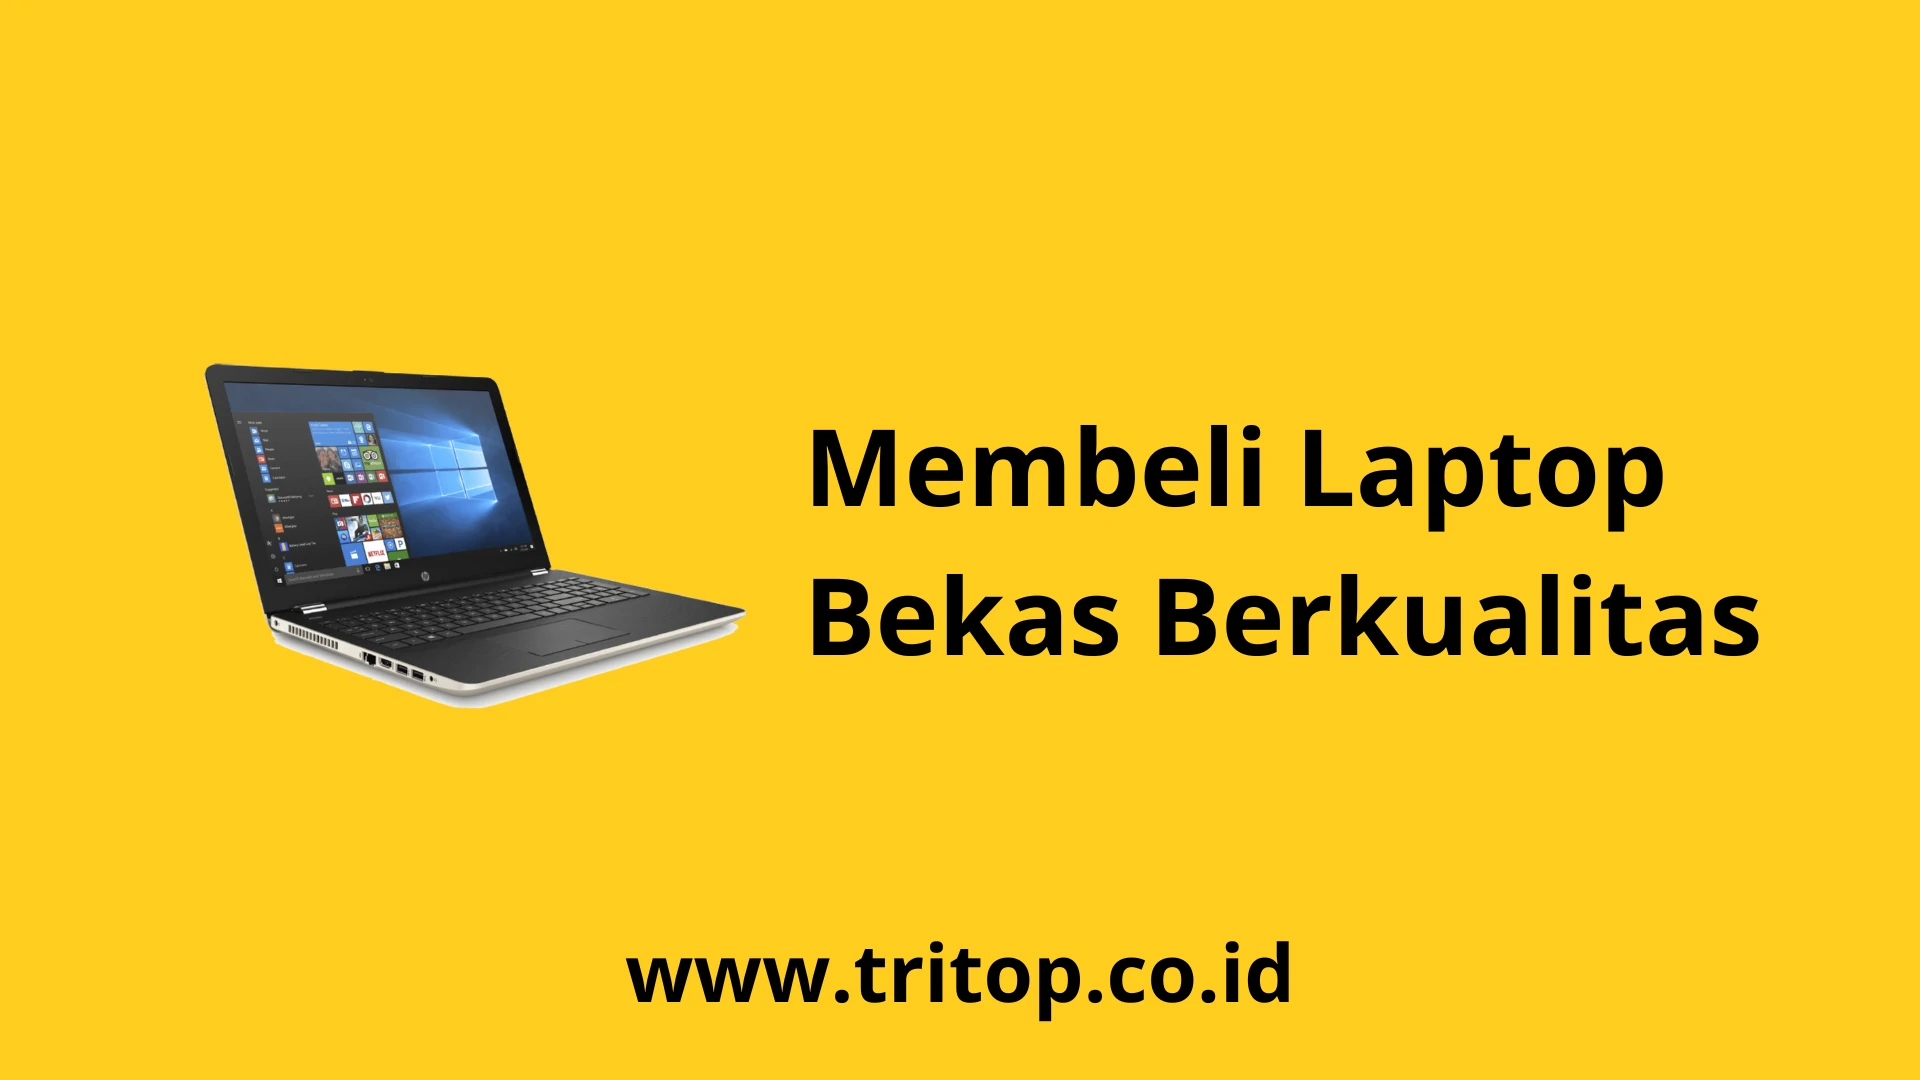 Laptop Bekas Berkualitas Tritop.co.id